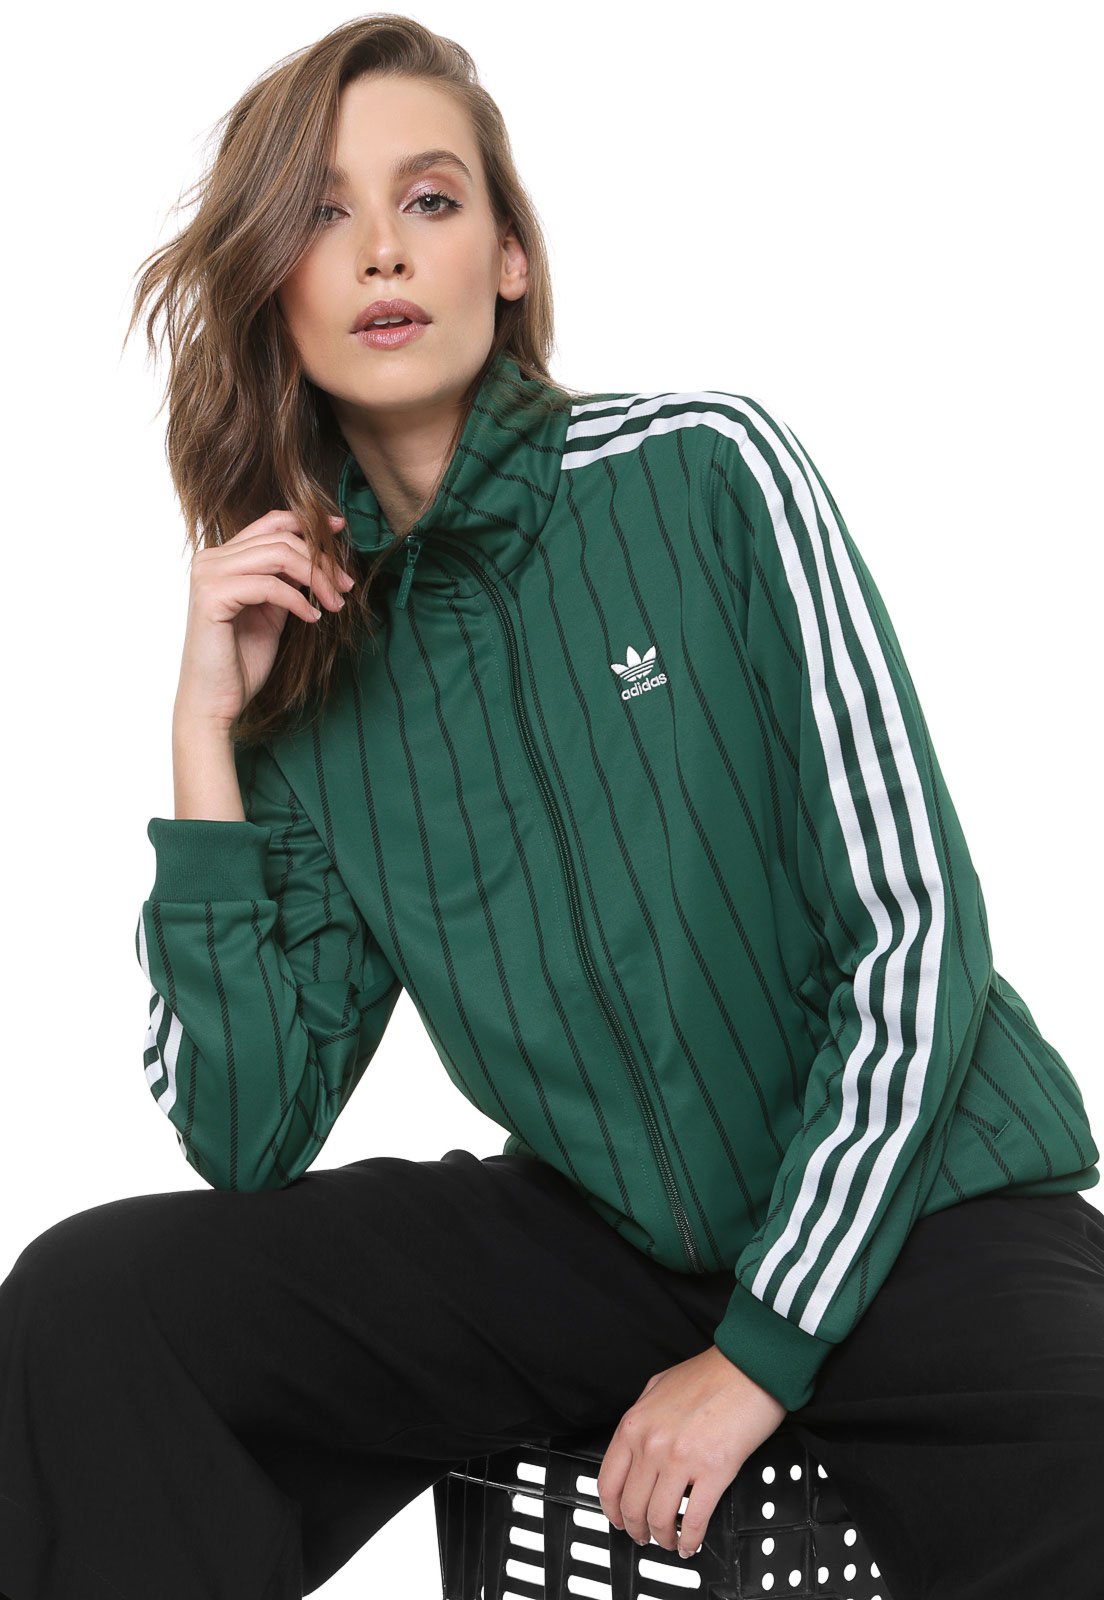 Jaqueta adidas Originals Track Top Verde - Compre Agora